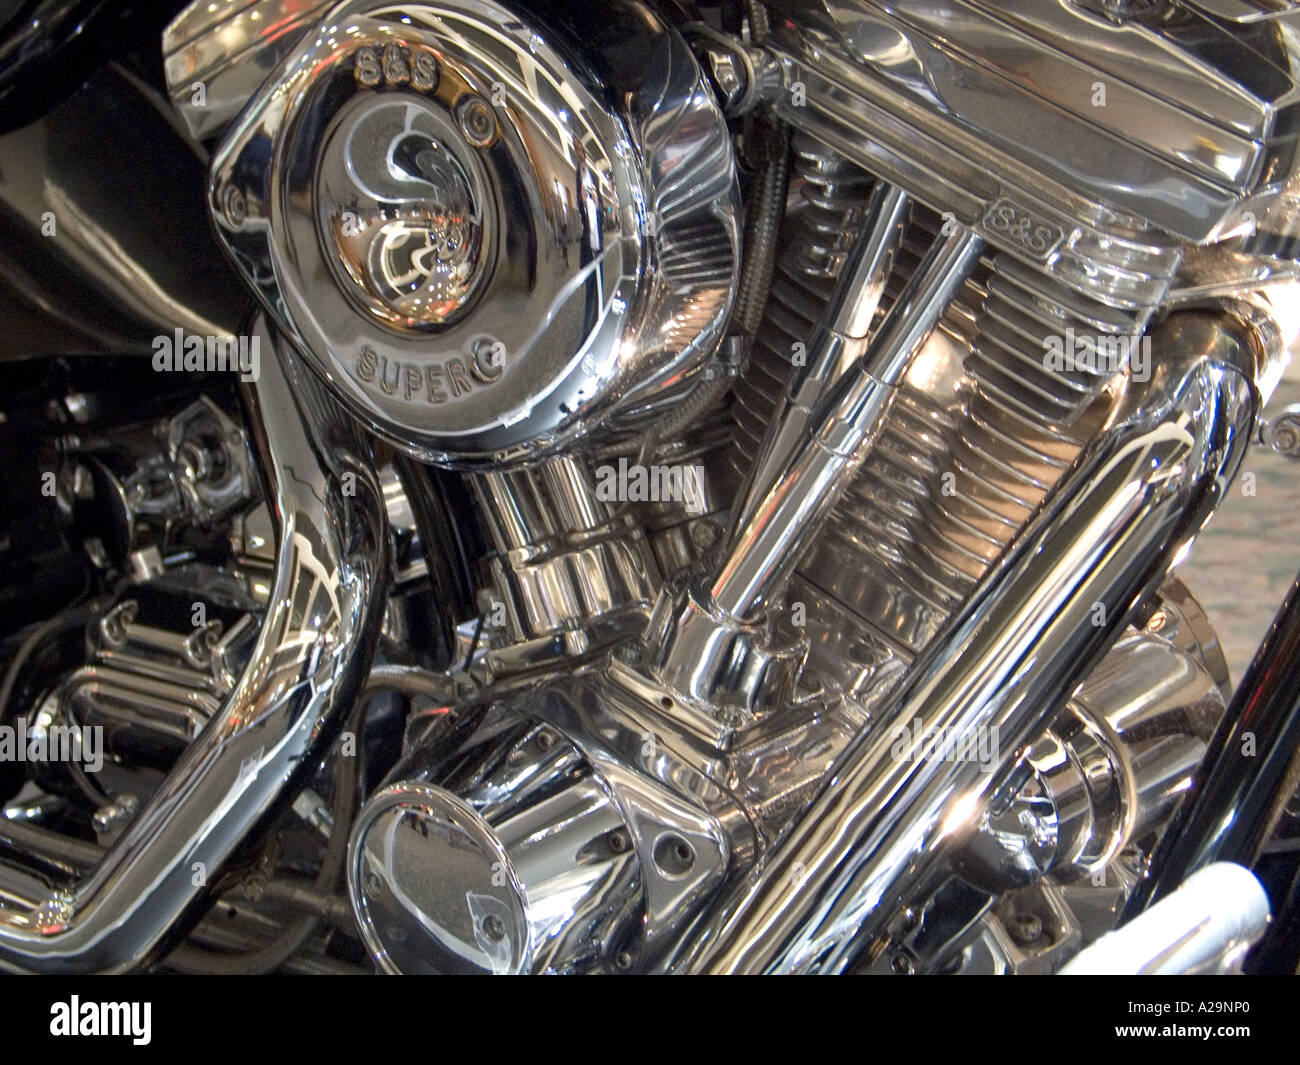 V twin motore motorcylce tutti coperti in chrome Foto Stock